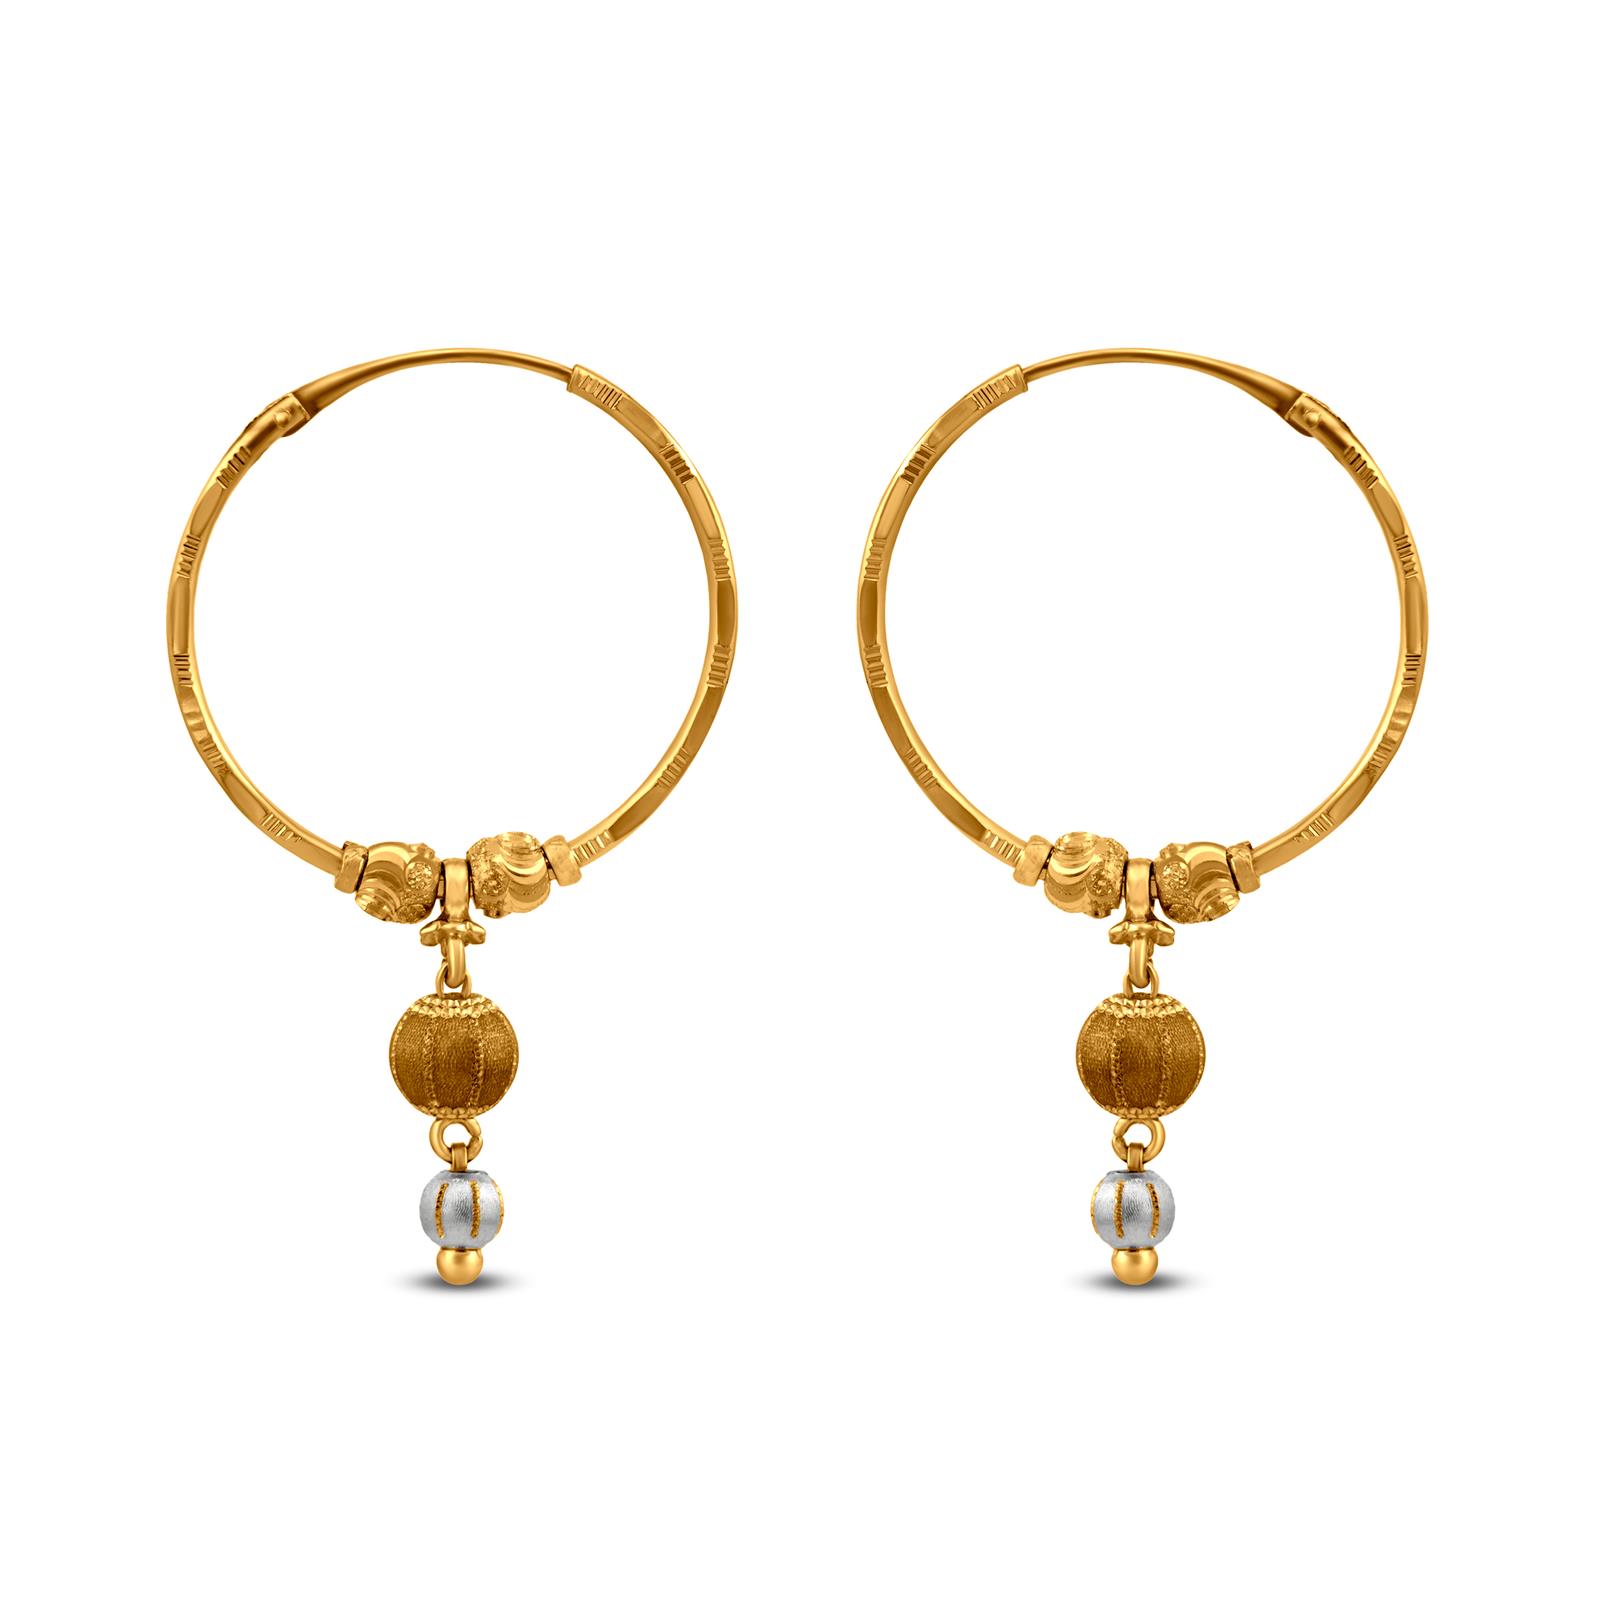 235-GER11037 - Makarakundanalu - 22K Gold Hoop Earrings with Ruby , Emerald  , Beads & Pearls | Earrings, Gold hoop earrings, Indian earrings